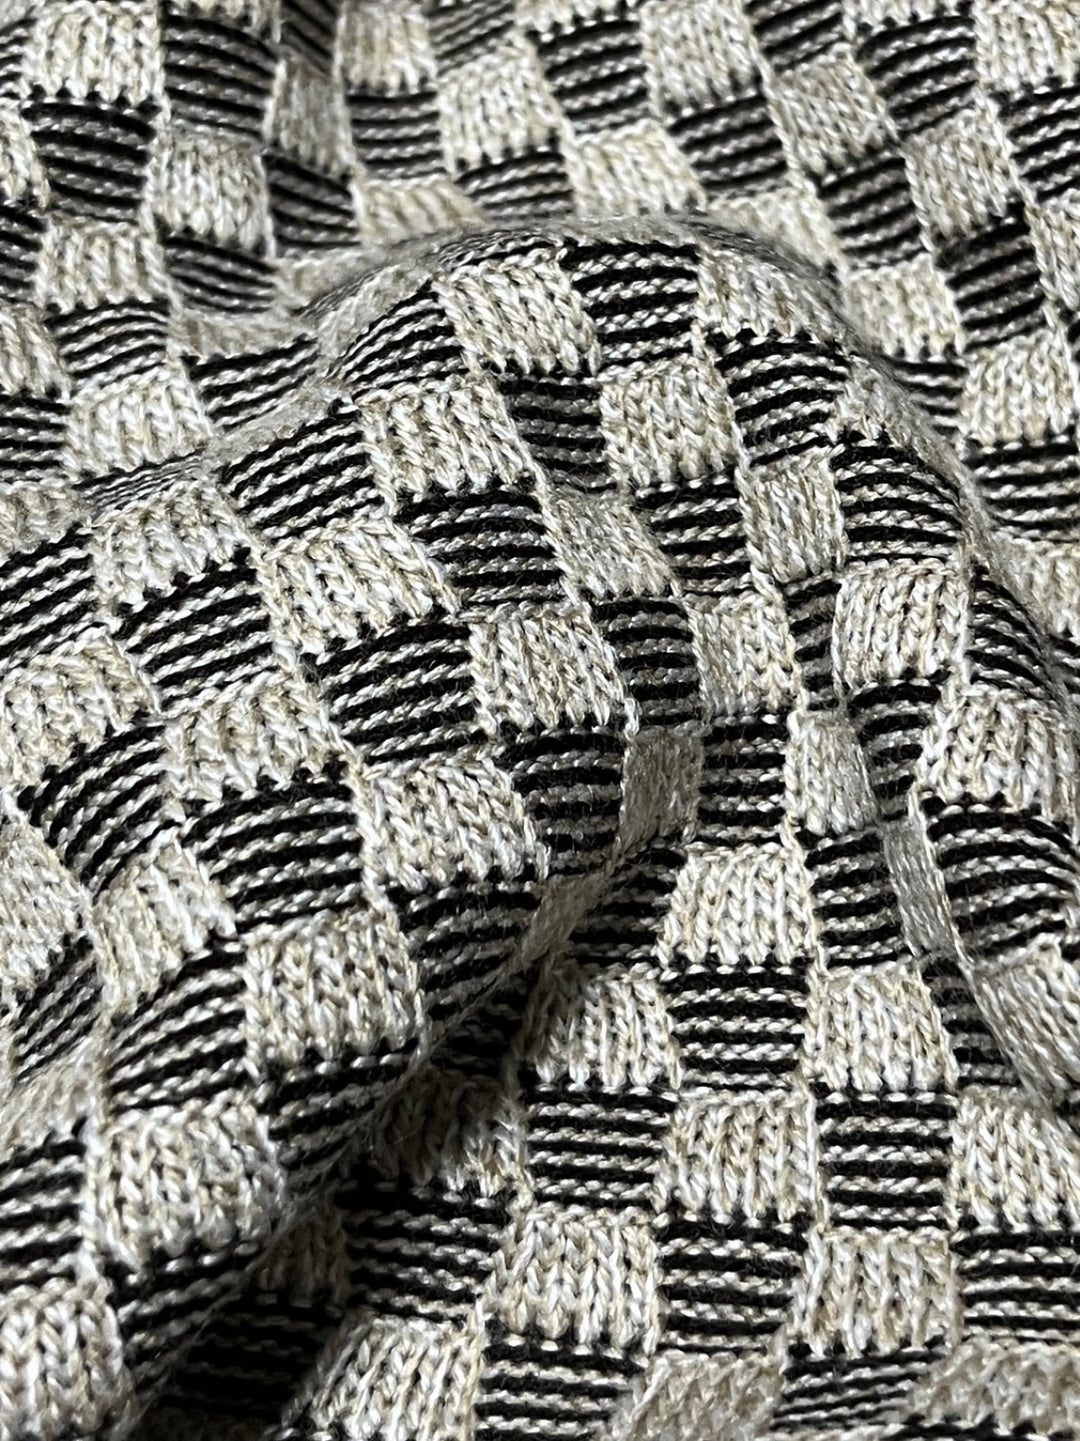 beige × black checkered knit